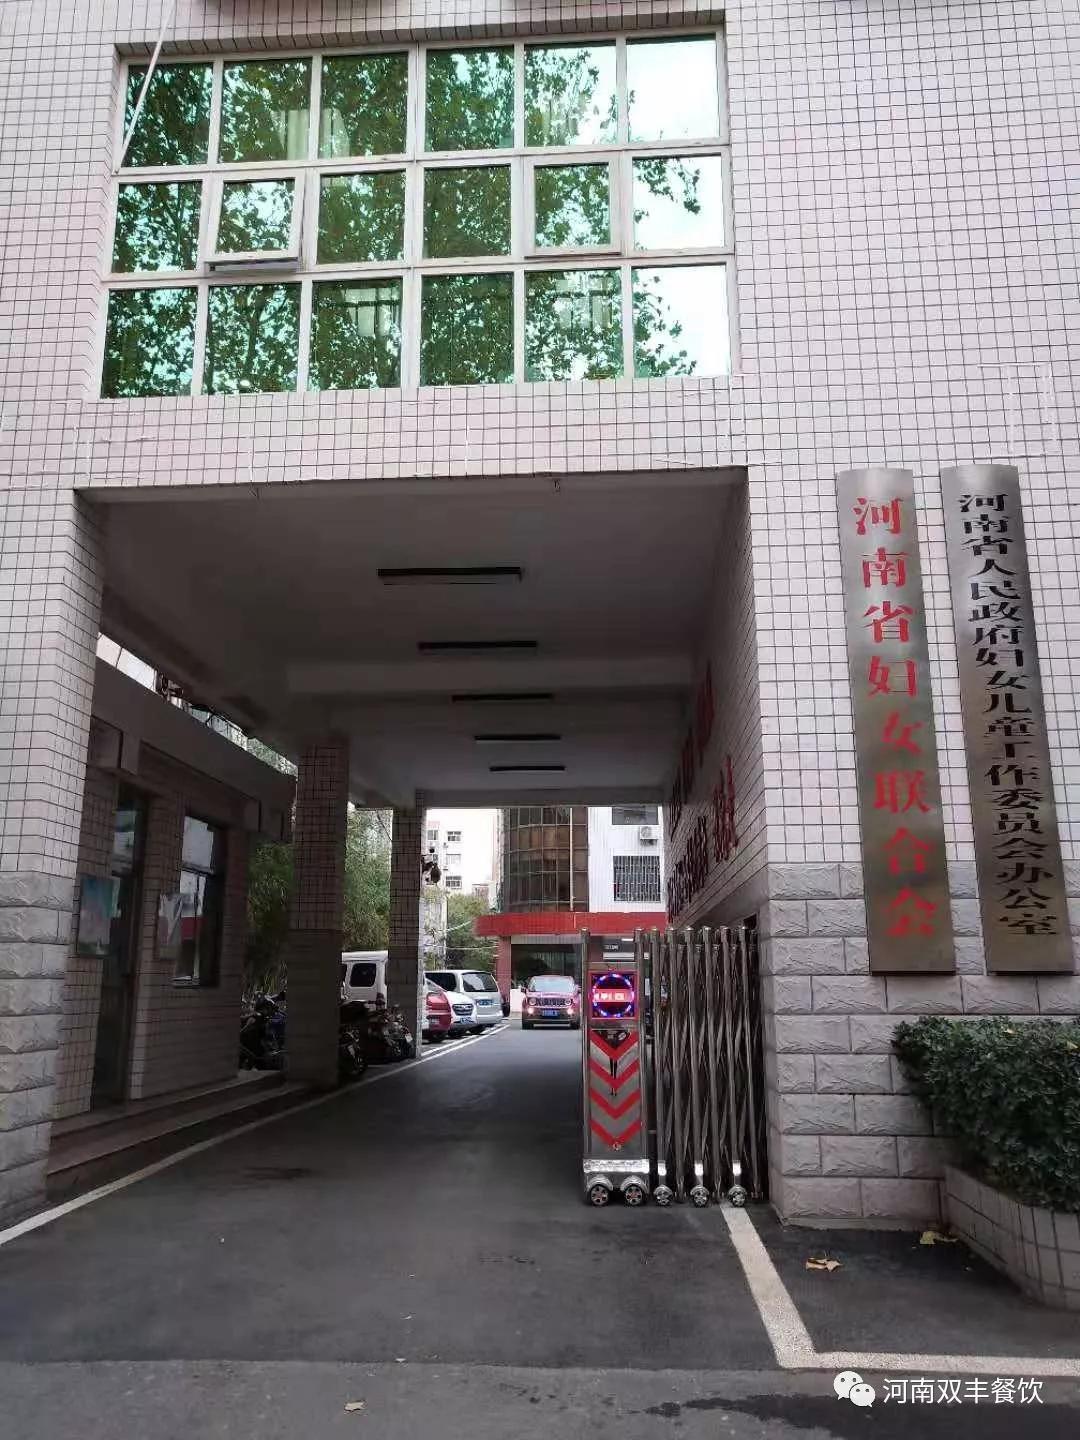 双丰公司河南省妇女联合会职工餐厅正式运营